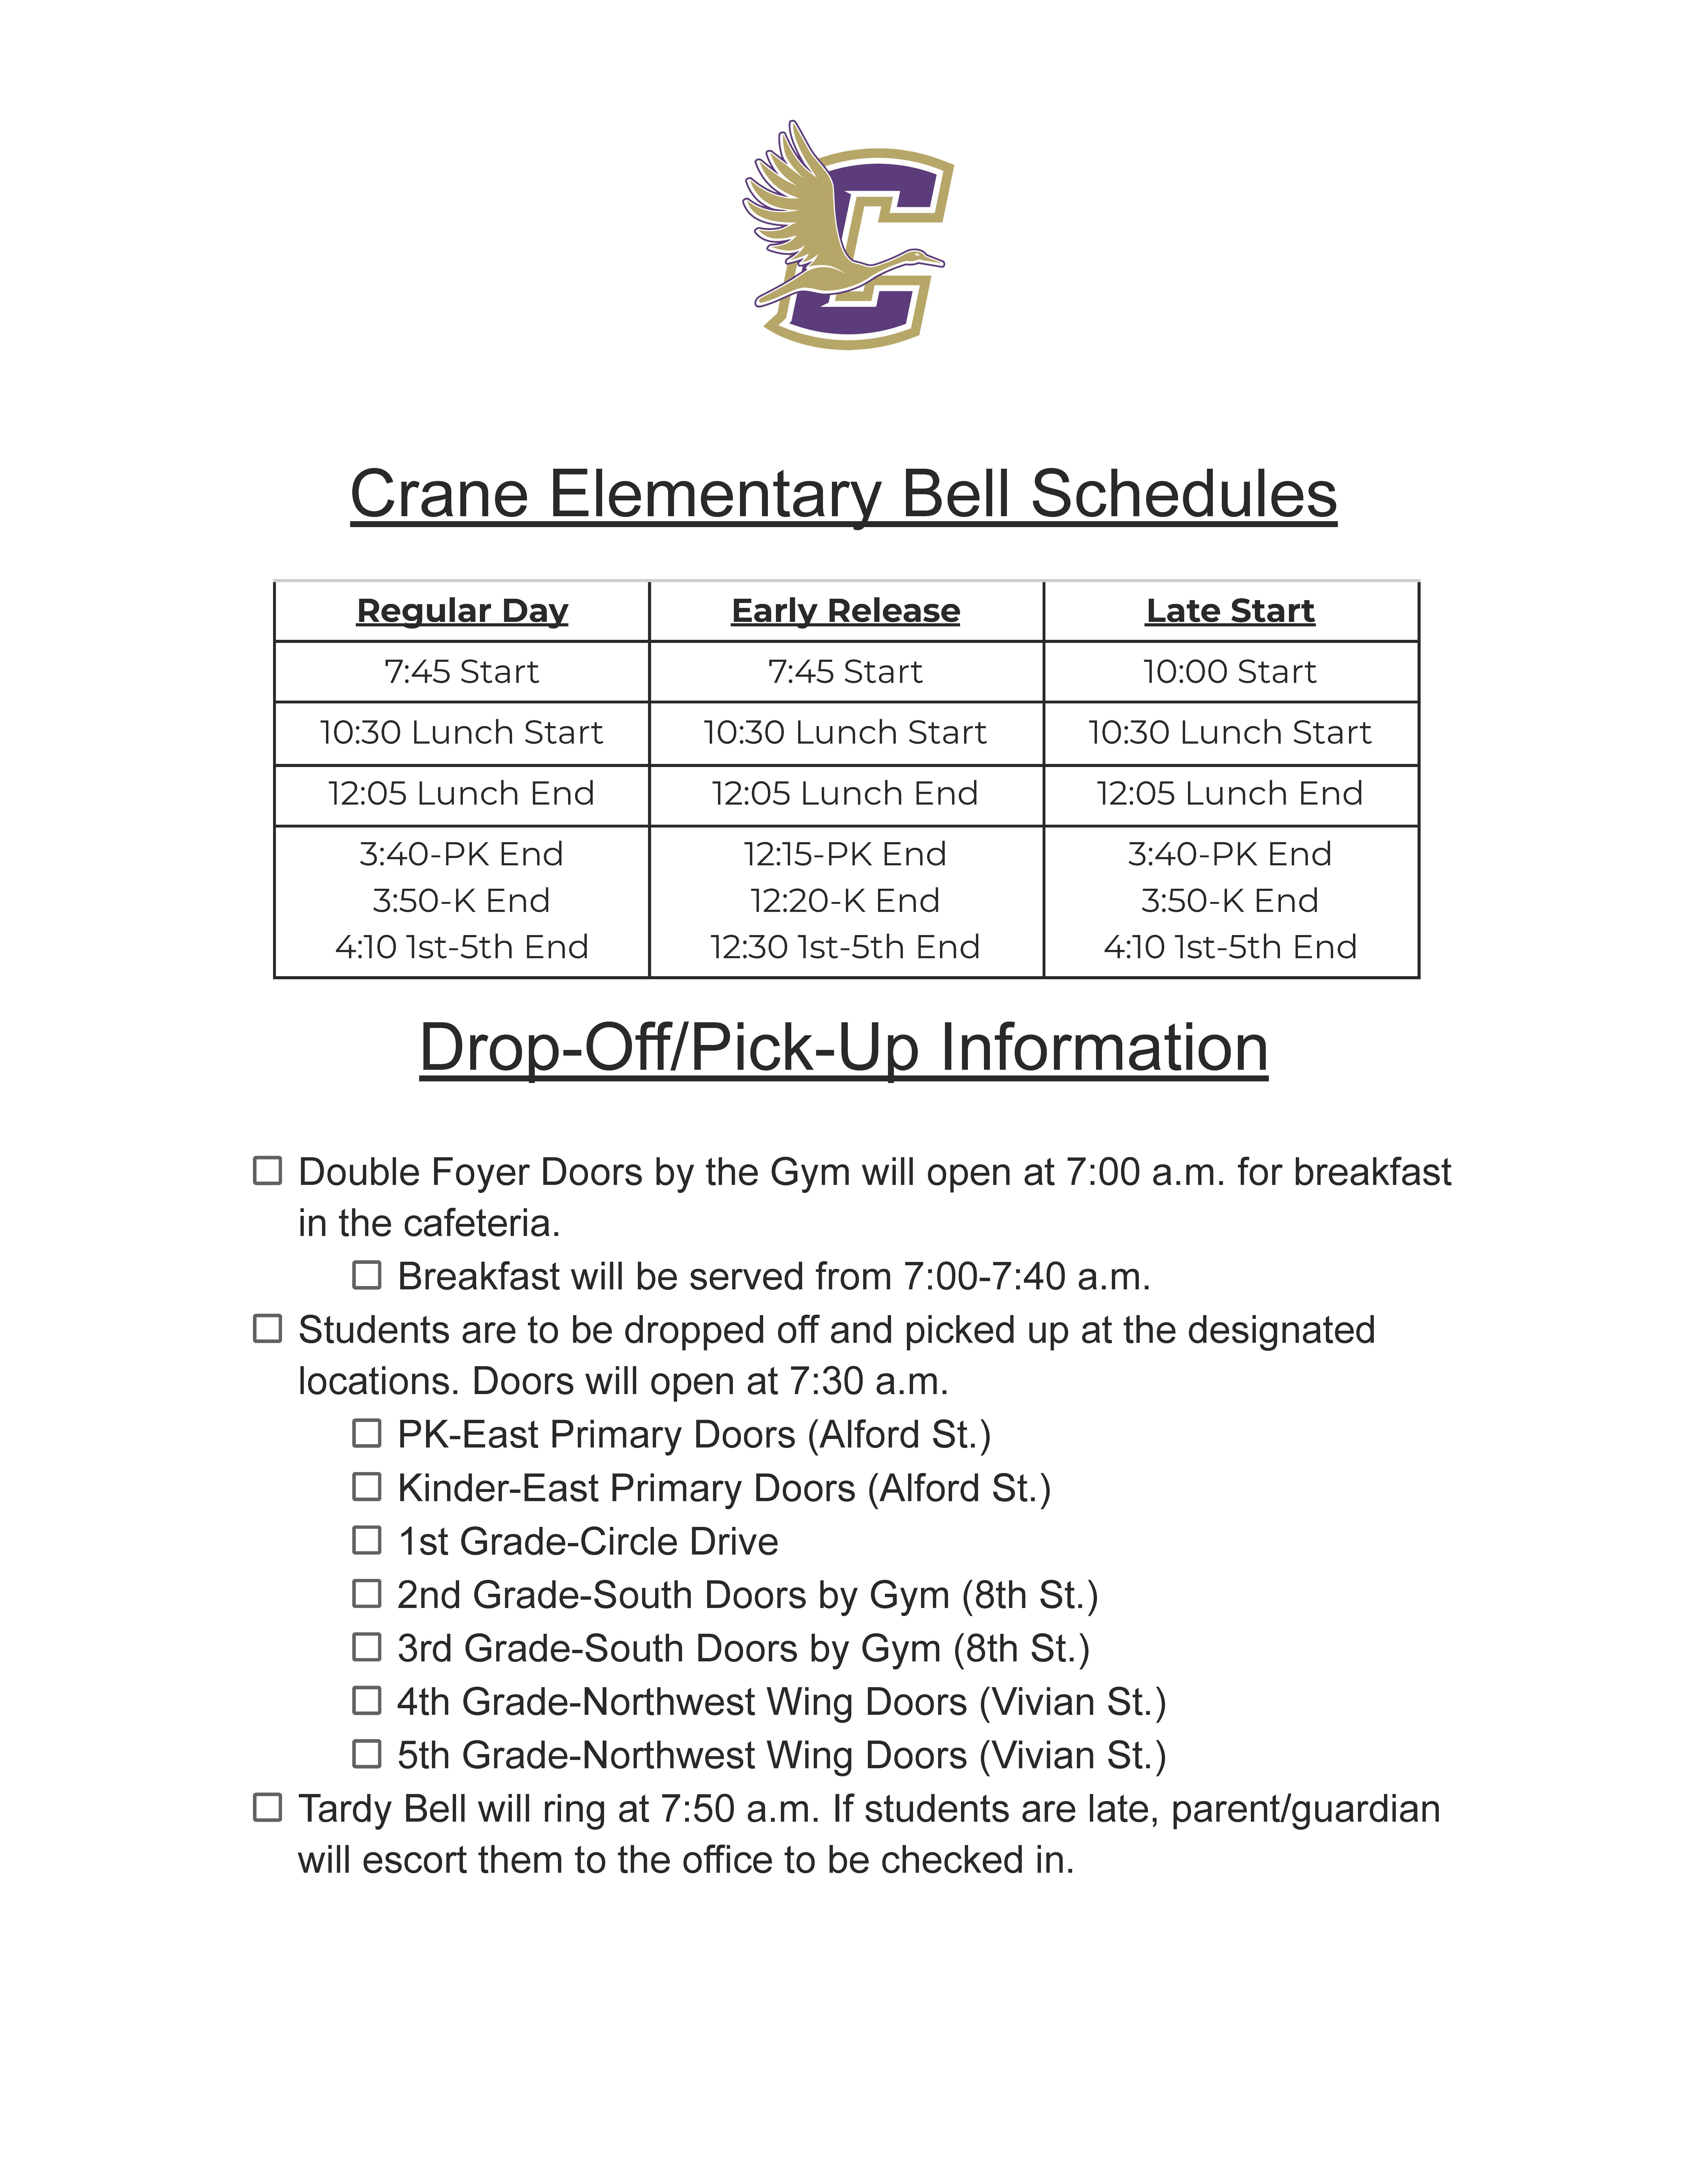 Crane Elementary School Bell Schedule